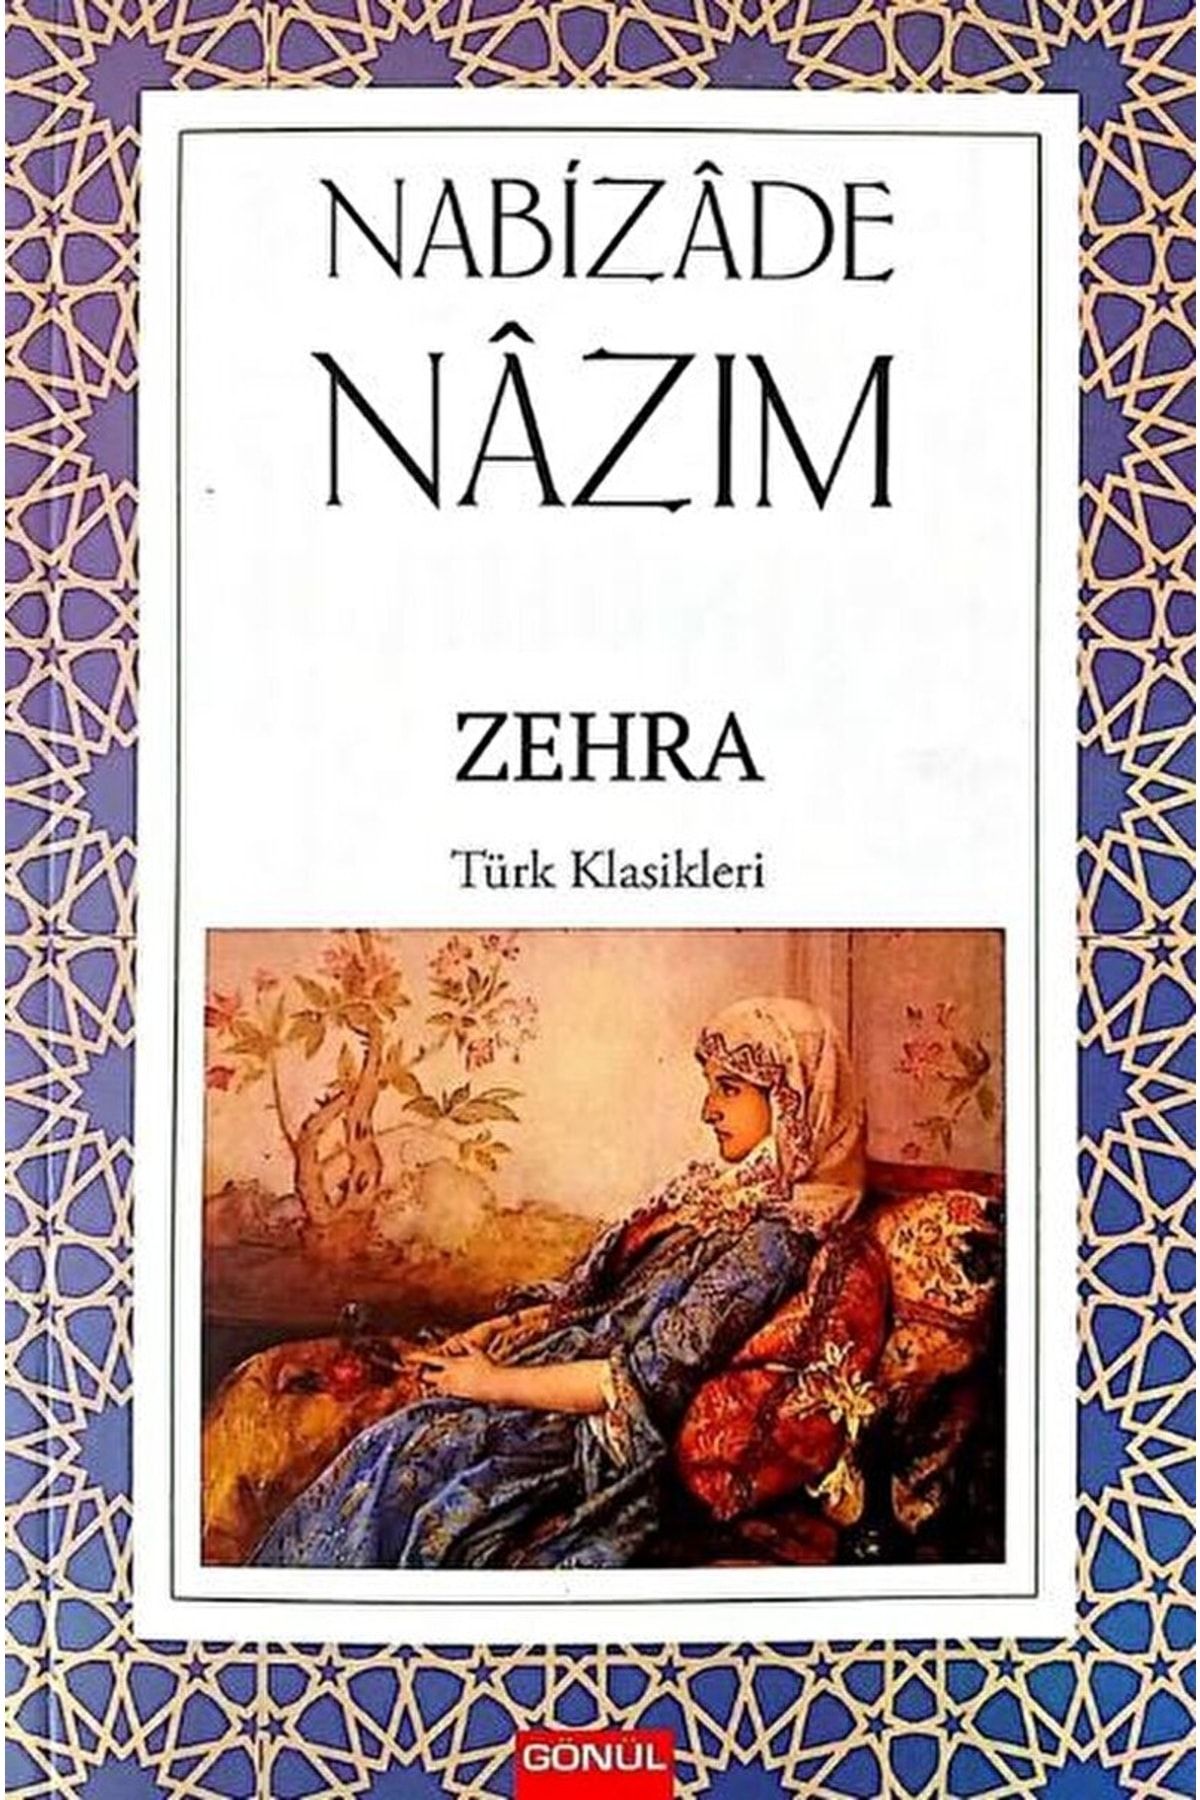 GÖNÜL YAYINCILIK Zehra / Nabizade Nazım / / 9786257362726